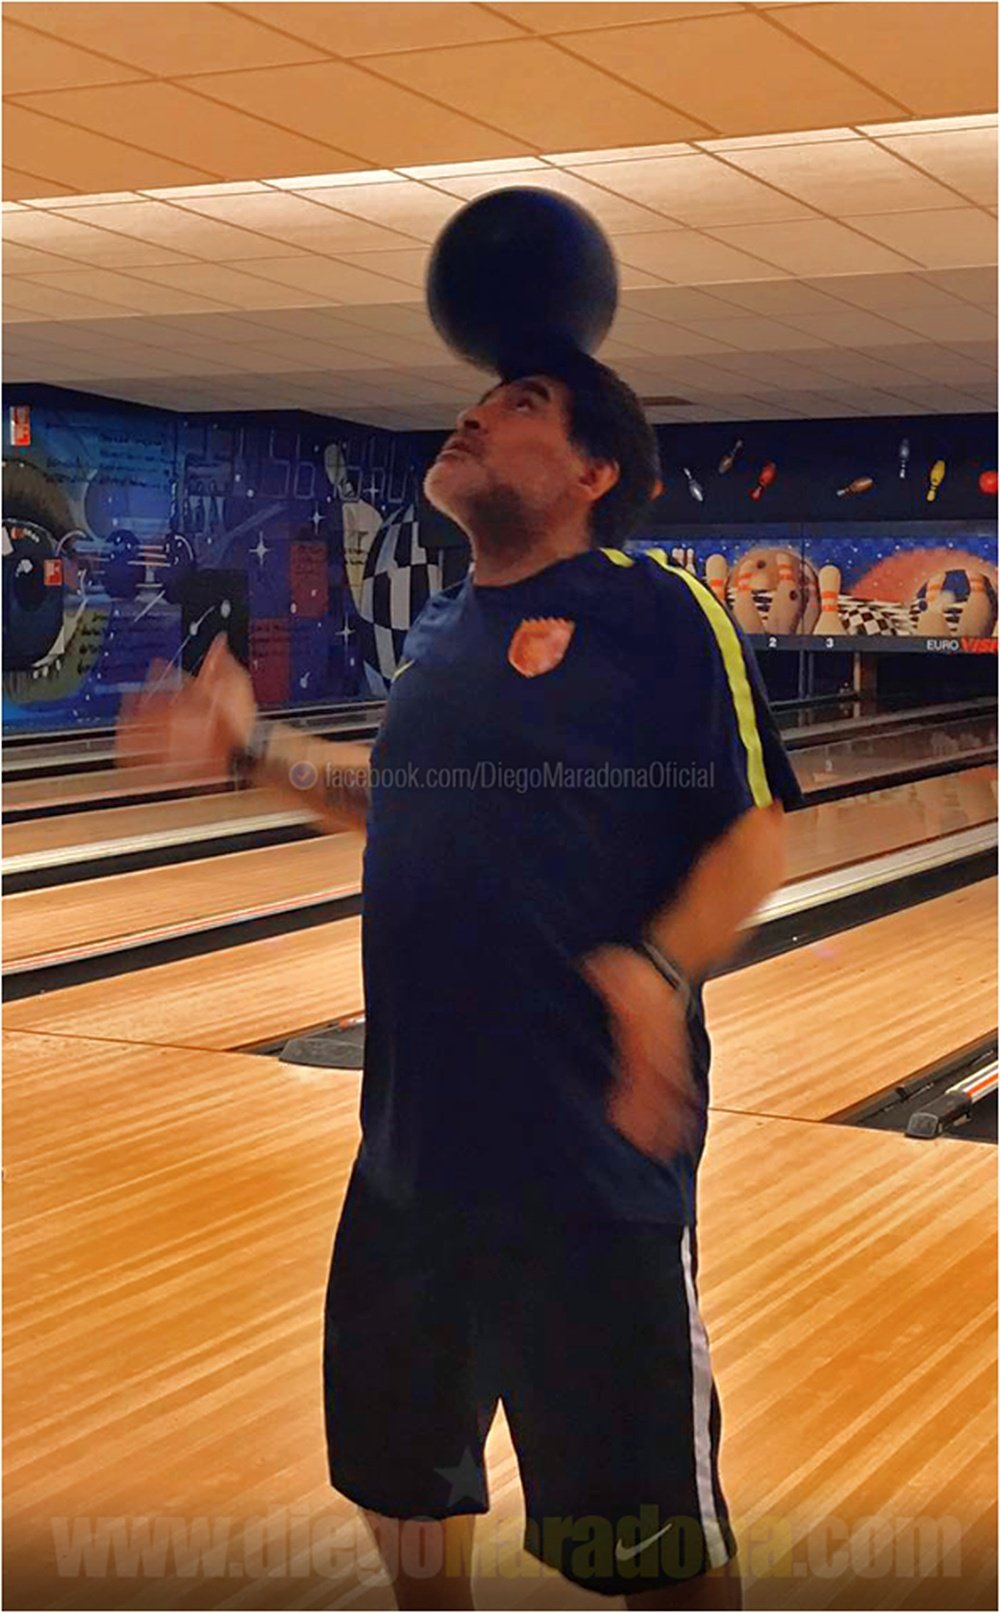 Diego Maradona se distrajo jugando al bowling. DiegoMaradona